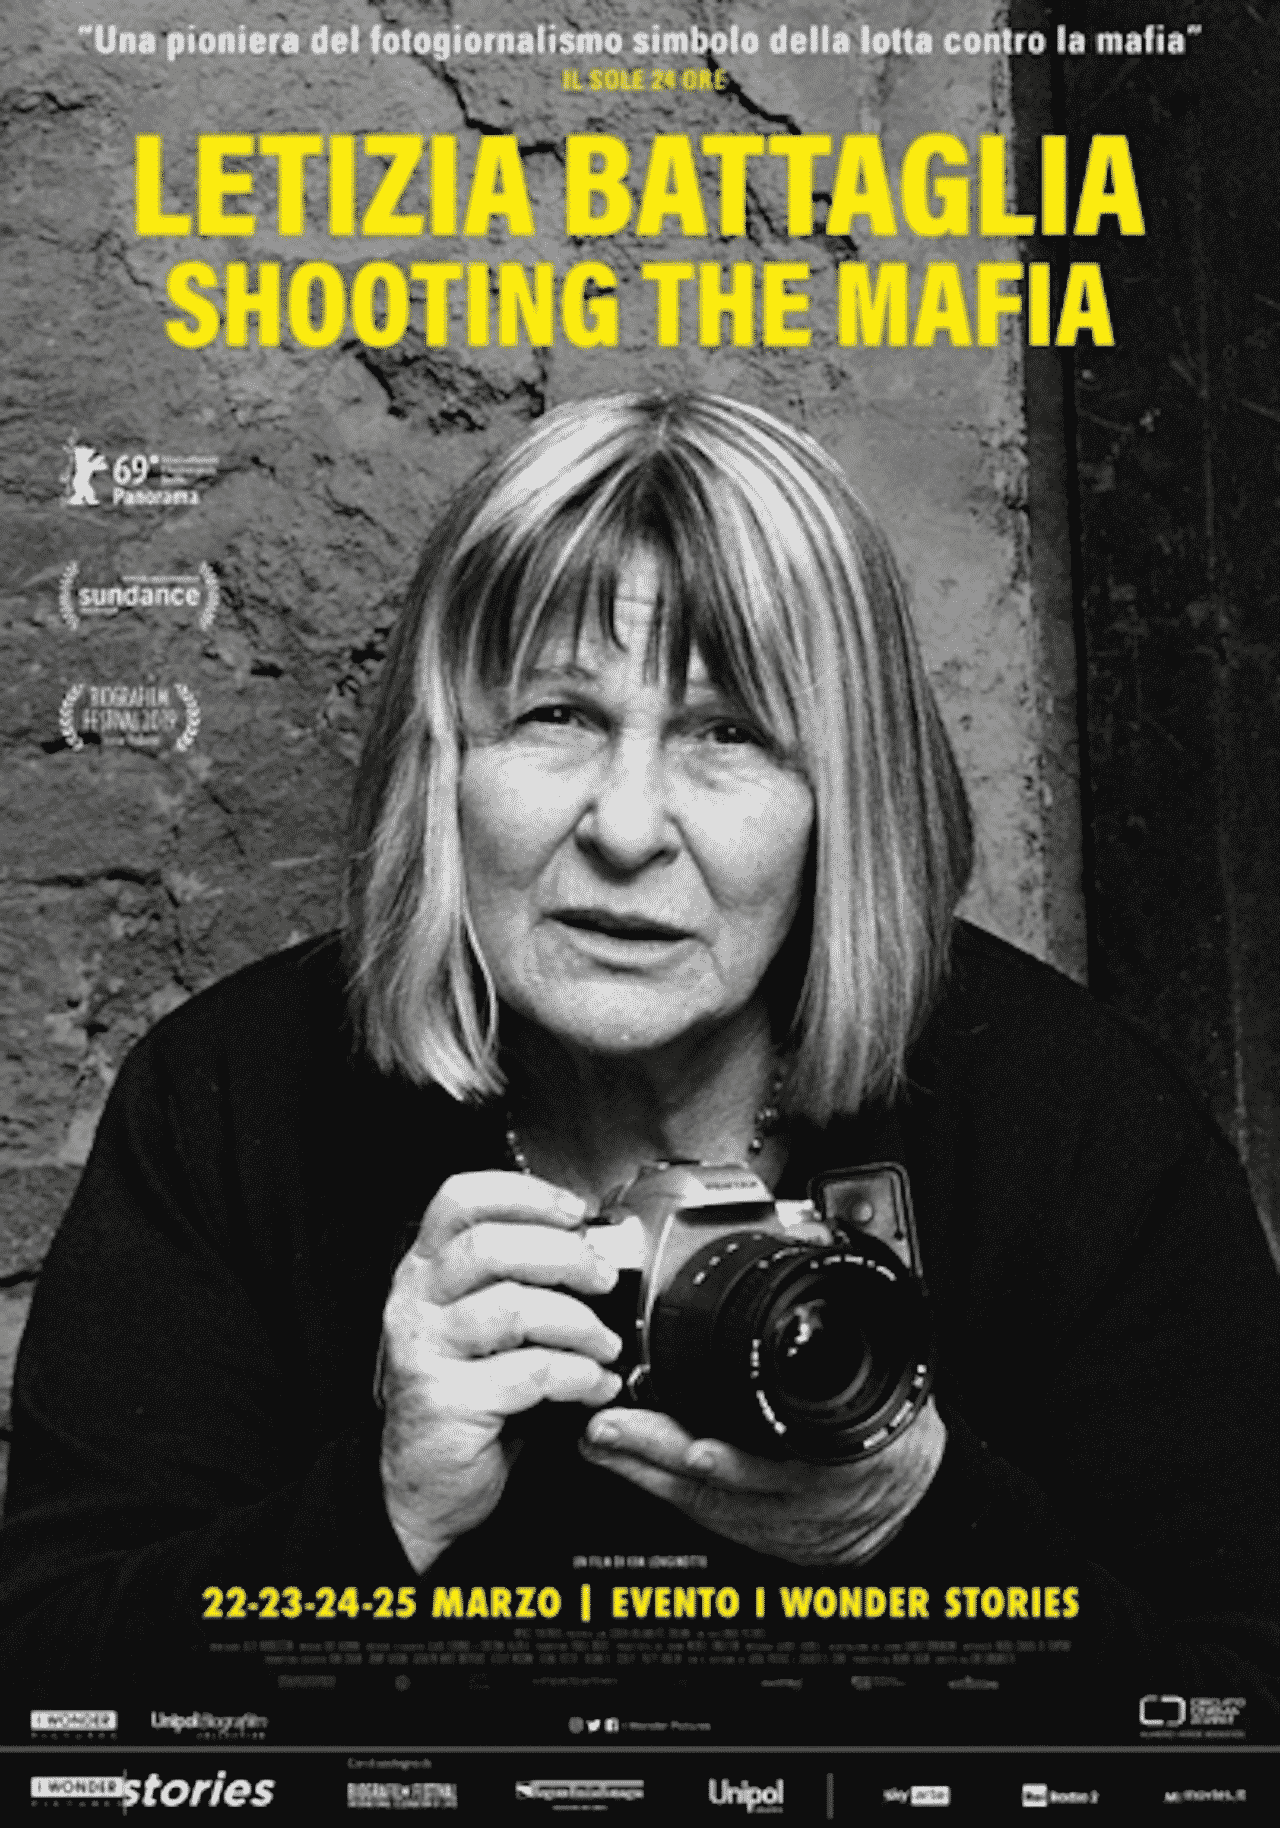 Letizia Battaglia, locandina film, shooting The mafia